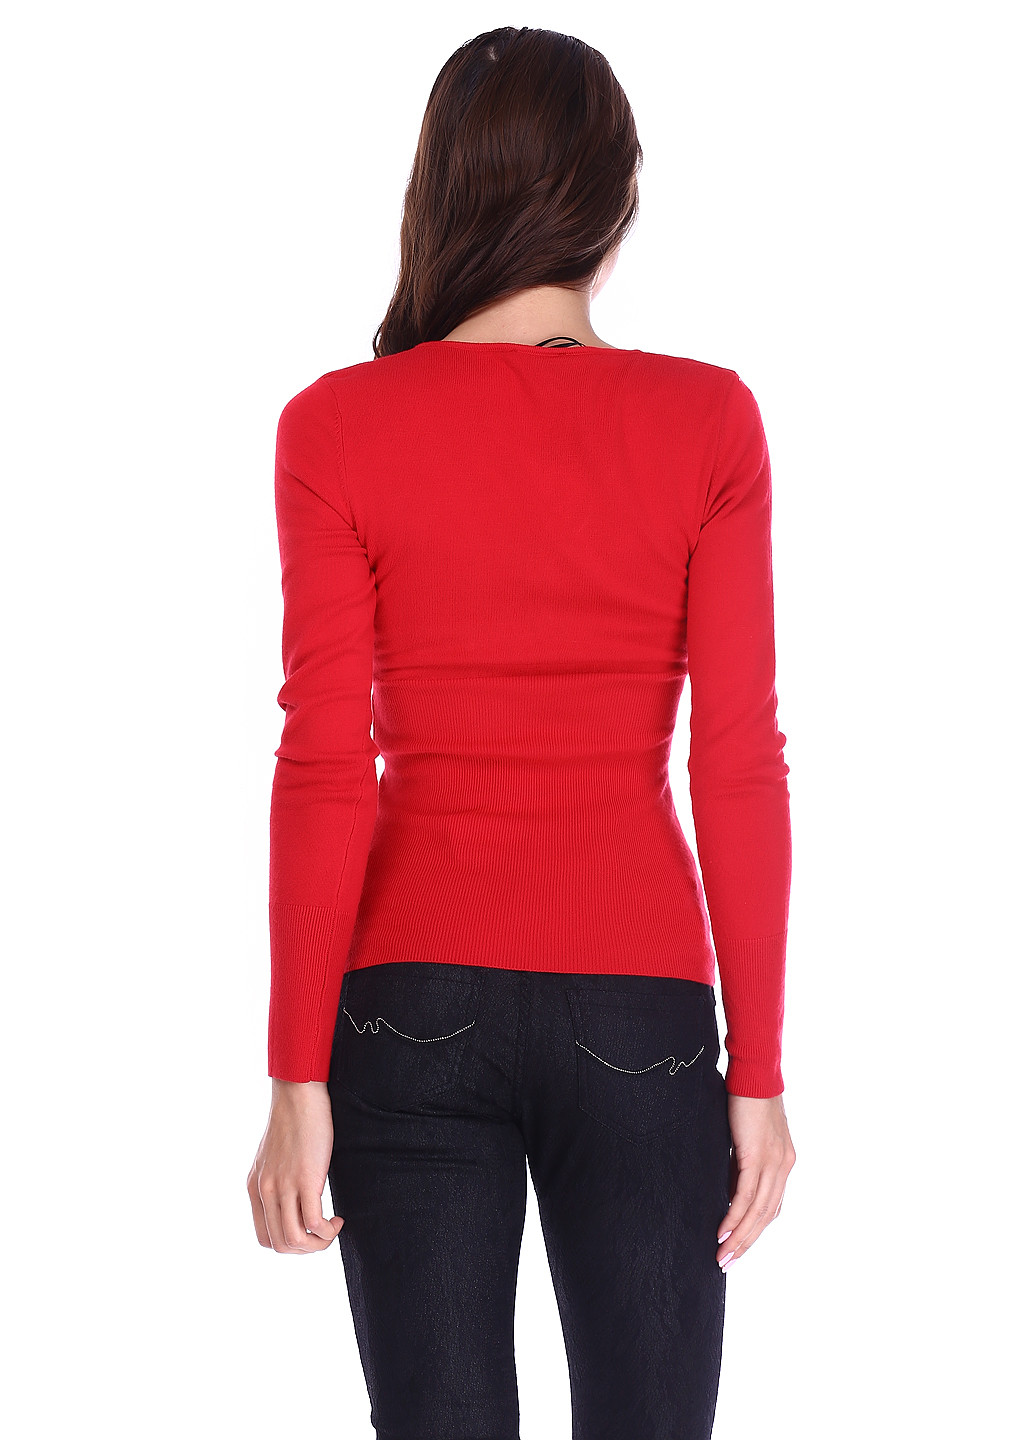 Красный демисезонный пуловер пуловер Morgan